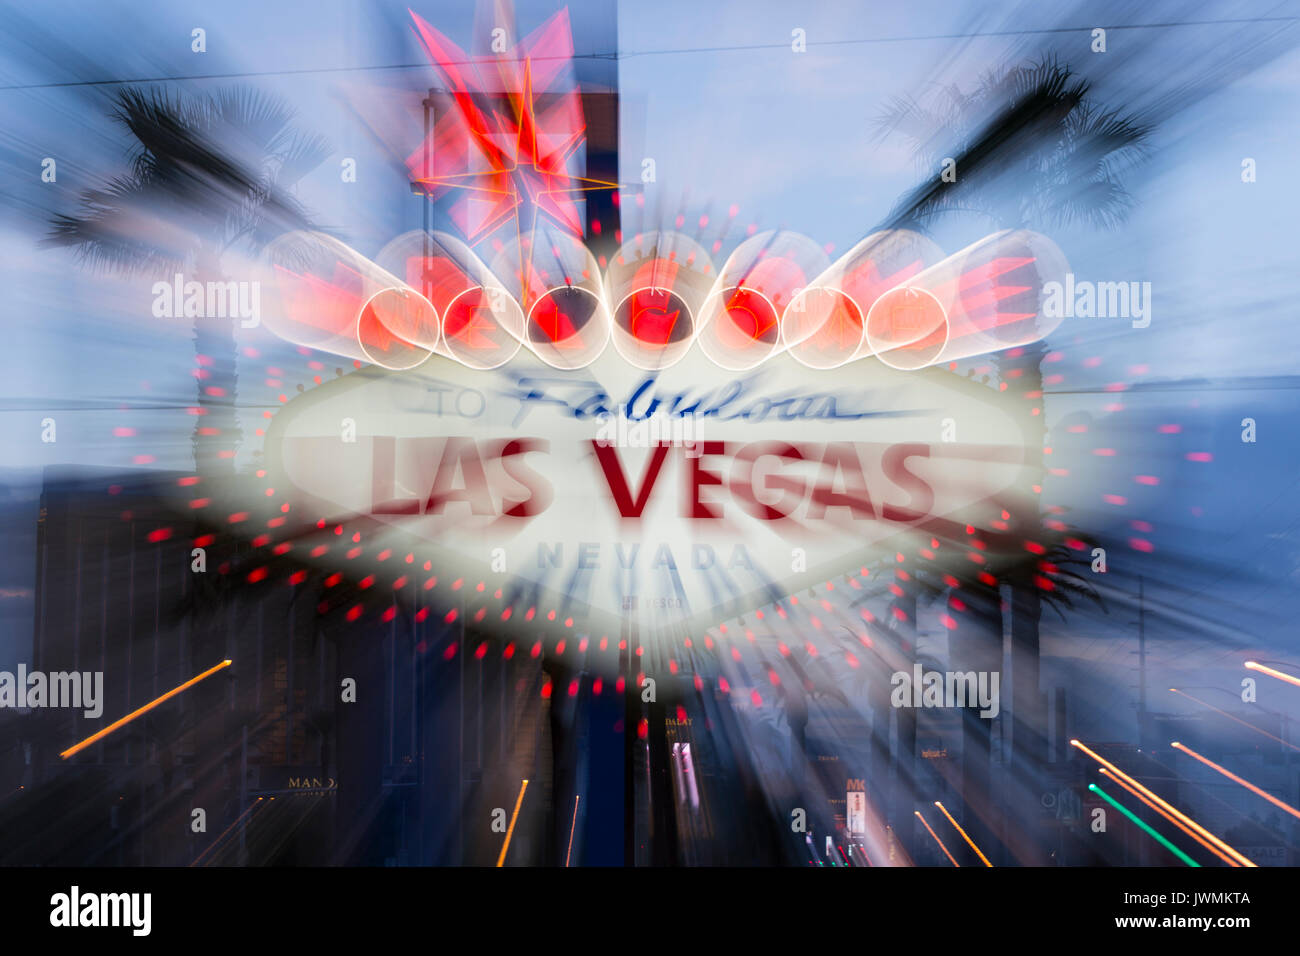 L'iconico 'Benvenuti al favoloso Las Vegas' insegna al neon che accoglie i visitatori di Las Vegas in viaggio verso nord sulla Strip di Las Vegas. Foto Stock